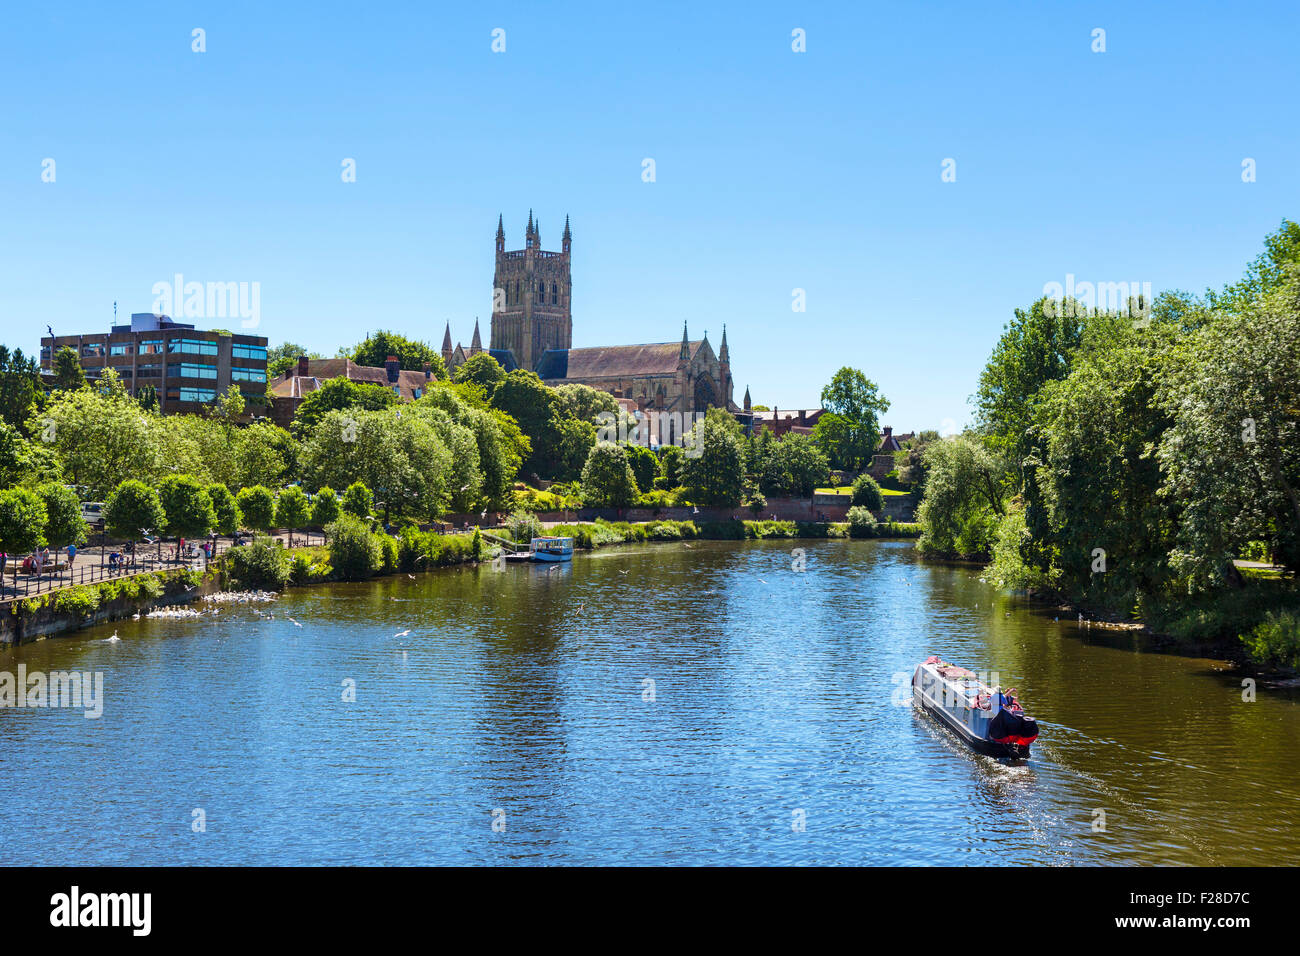 15-04 sur la rivière Severn en face de la cathédrale de Worcester, Worcester vu du pont, Worcester, England, UK Banque D'Images